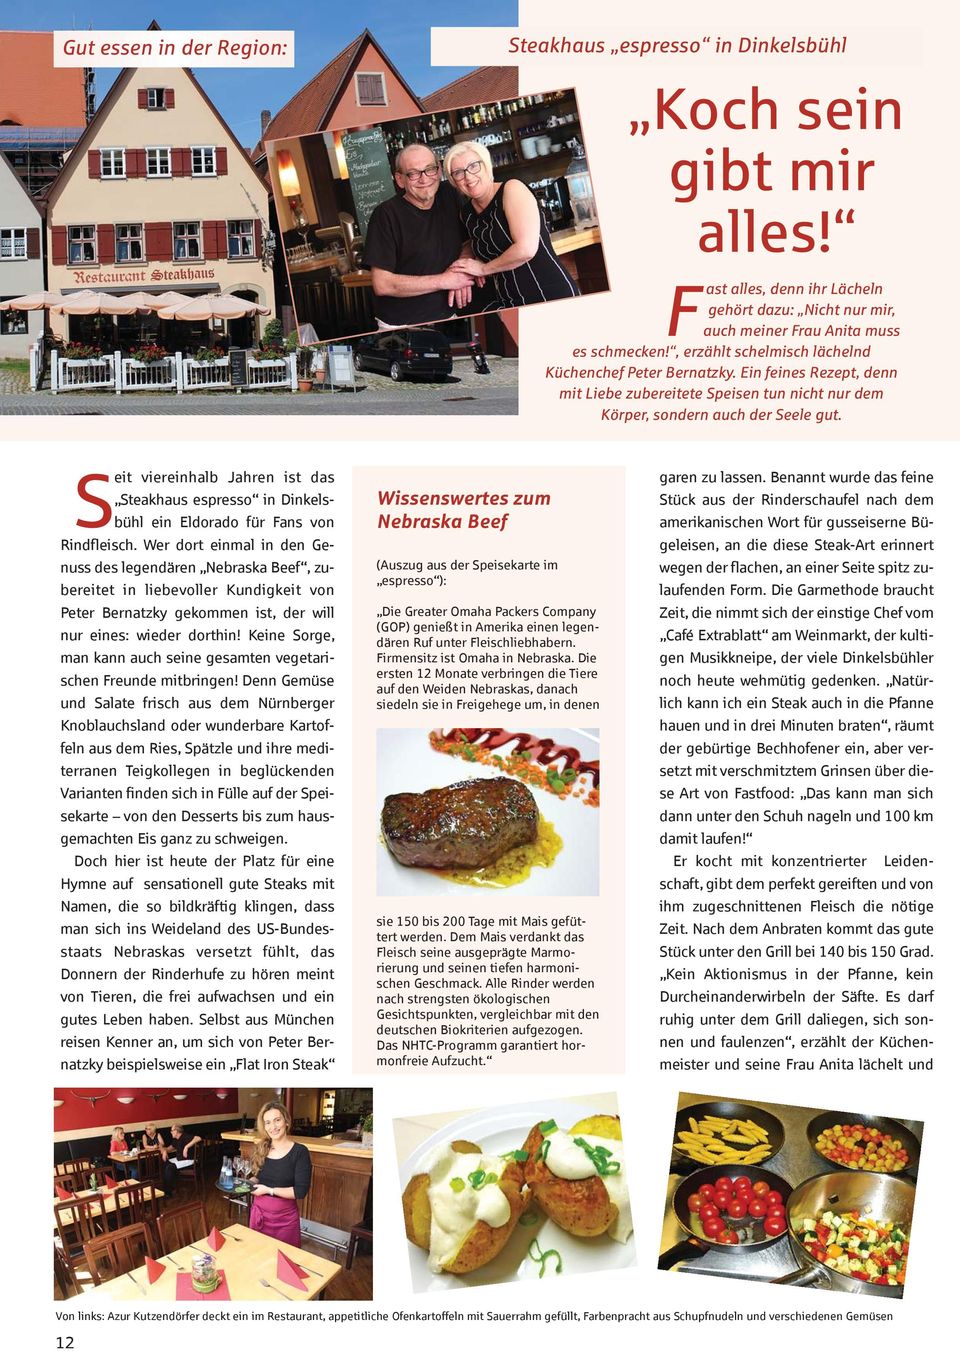 Seit viereinhalb Jahren ist das Steakhaus espresso in Dinkelsbühl ein Eldorado für Fans von Rindfleisch.